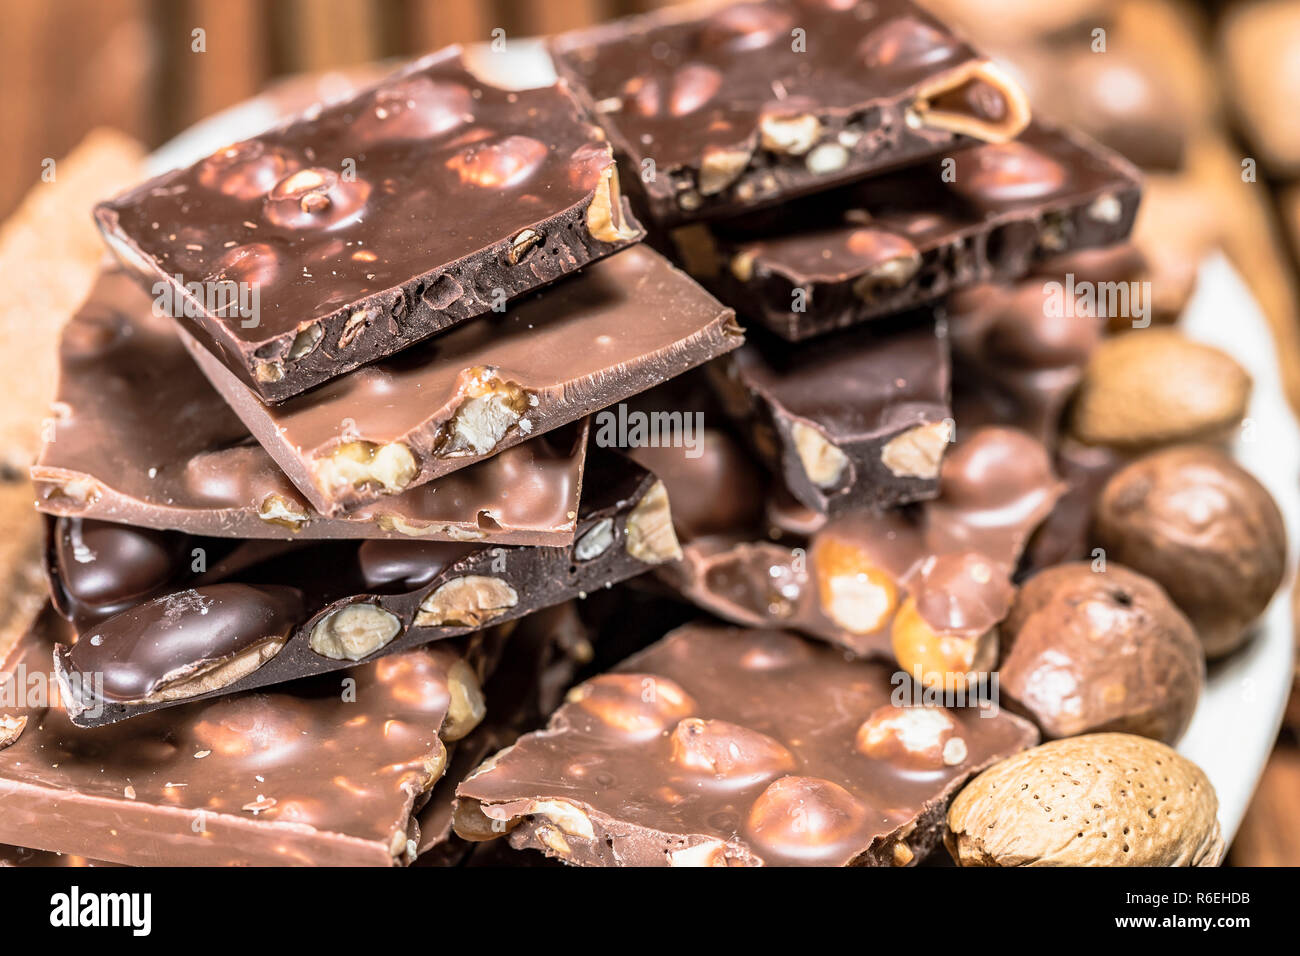 Platte von Mutter Schokolade mit ganzen Haselnüssen - Nahaufnahme Stockfoto